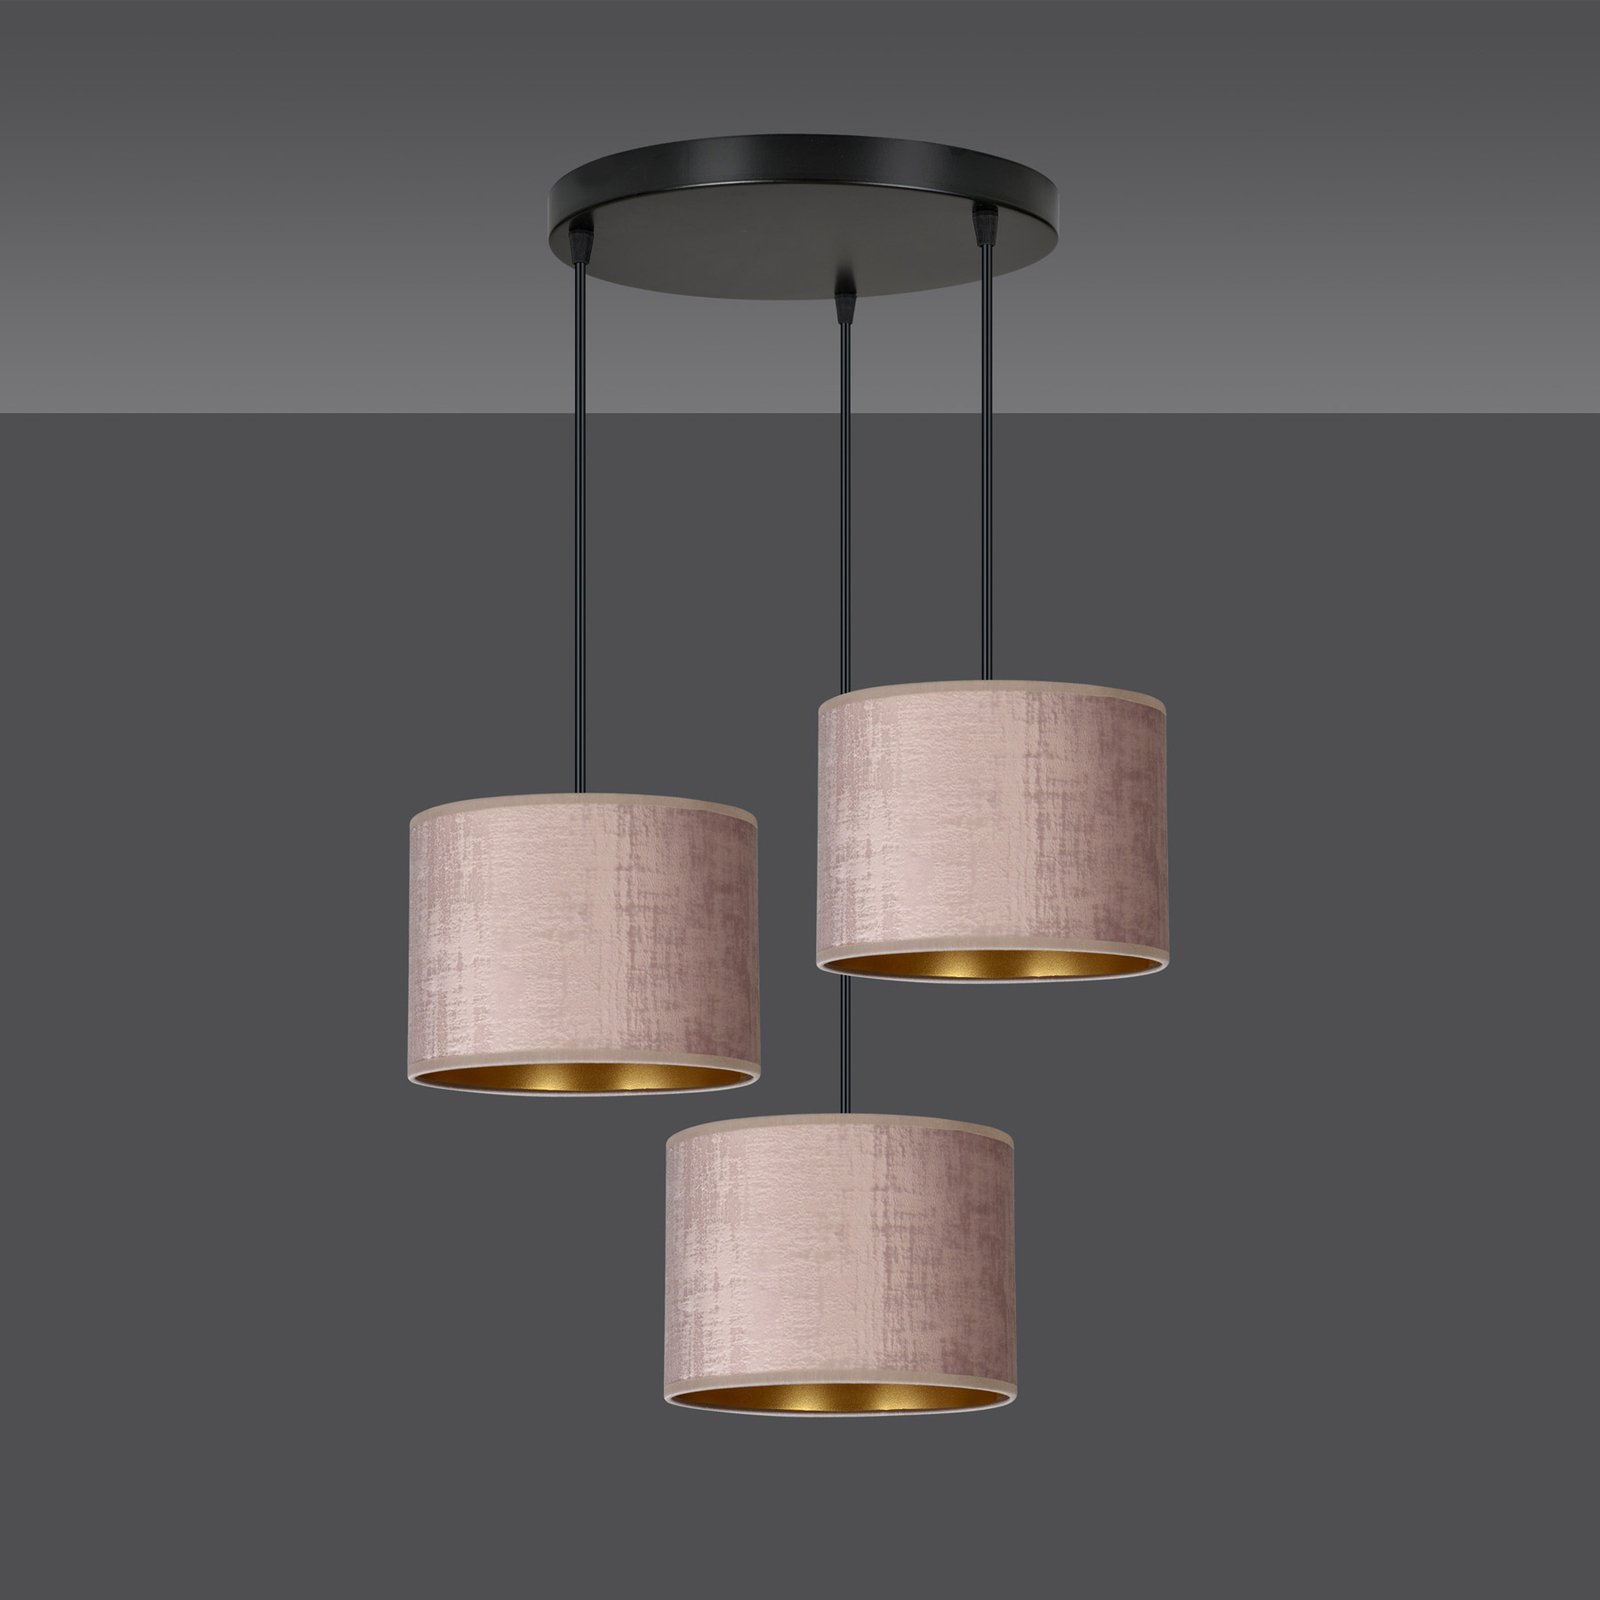 Hanglamp Jari stoffen kap 3-lamps rond rosé-goud